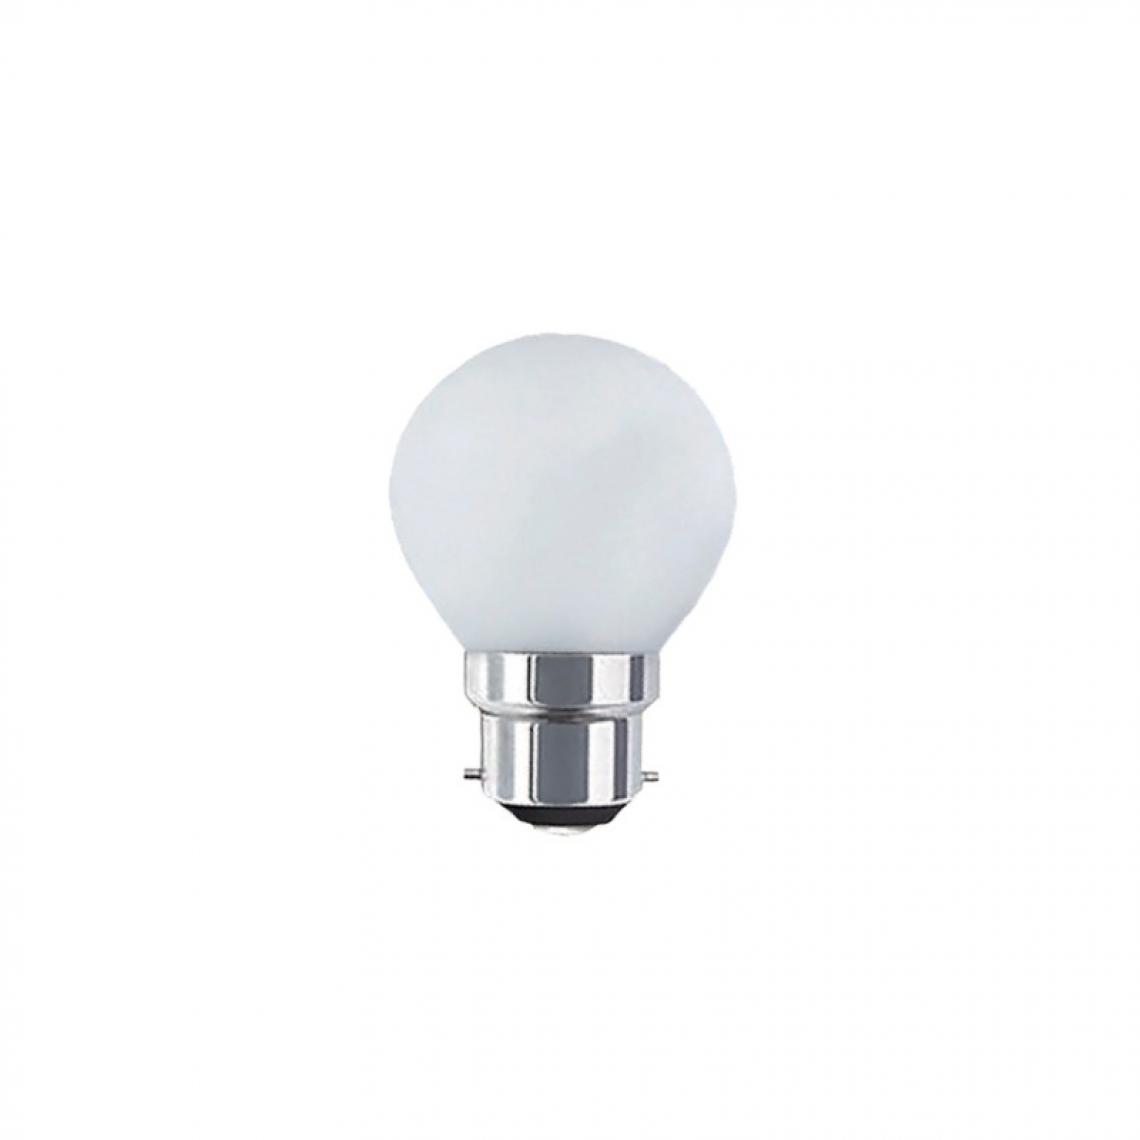 Xxcell - Ampoule LED guinguette blanche XXCELL - 1 W - B22 - Ampoules LED